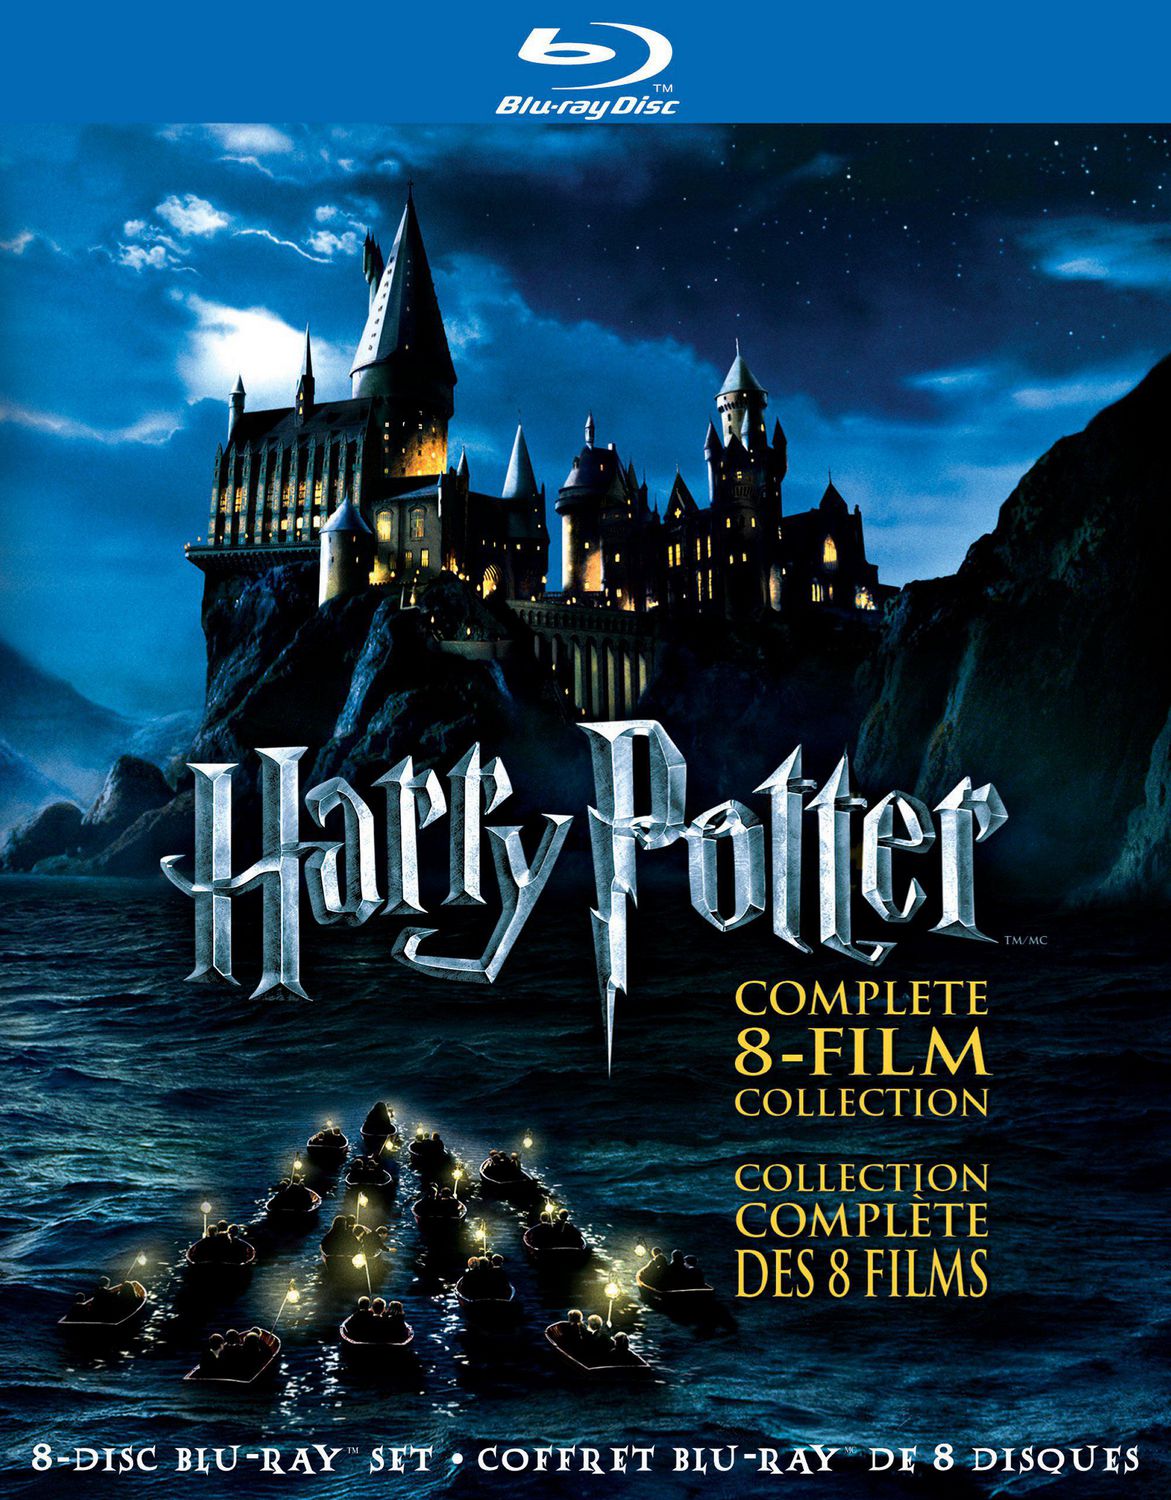 Verre Harry Potter et les Reliques de la Mort Gifts